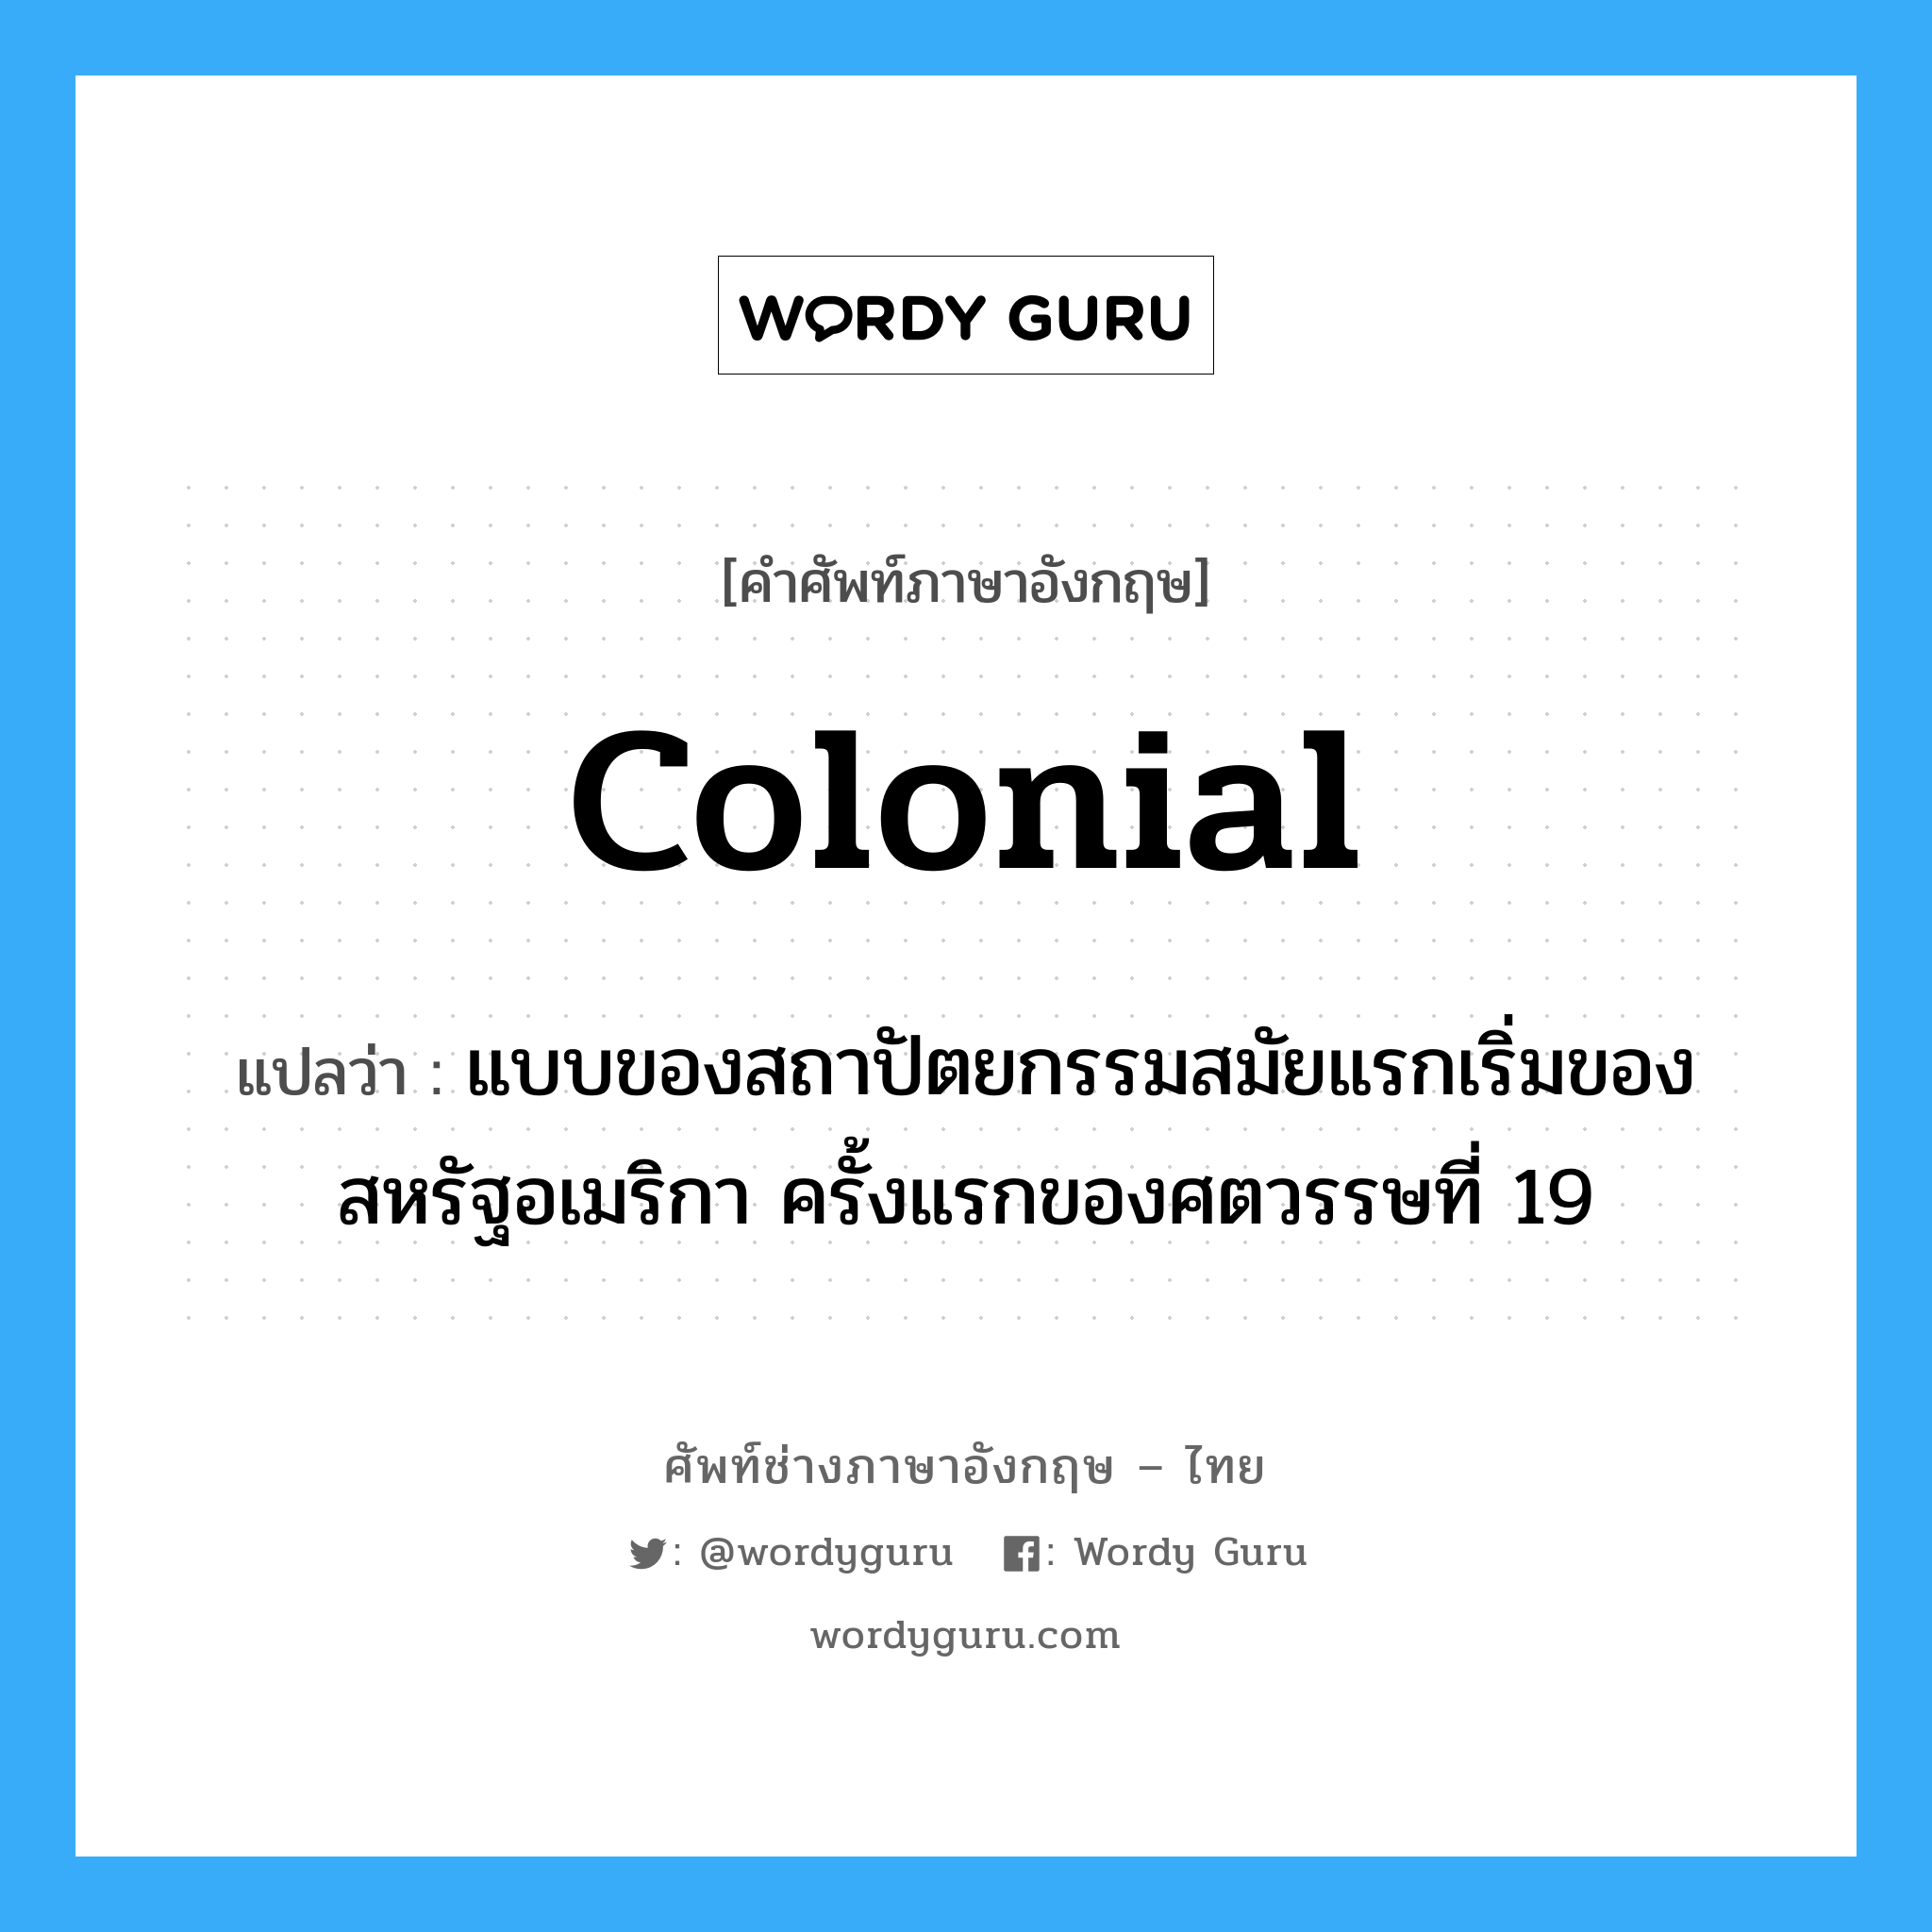 colonial แปลว่า?, คำศัพท์ช่างภาษาอังกฤษ - ไทย colonial คำศัพท์ภาษาอังกฤษ colonial แปลว่า แบบของสถาปัตยกรรมสมัยแรกเริ่มของสหรัฐอเมริกา ครั้งแรกของศตวรรษที่ 19